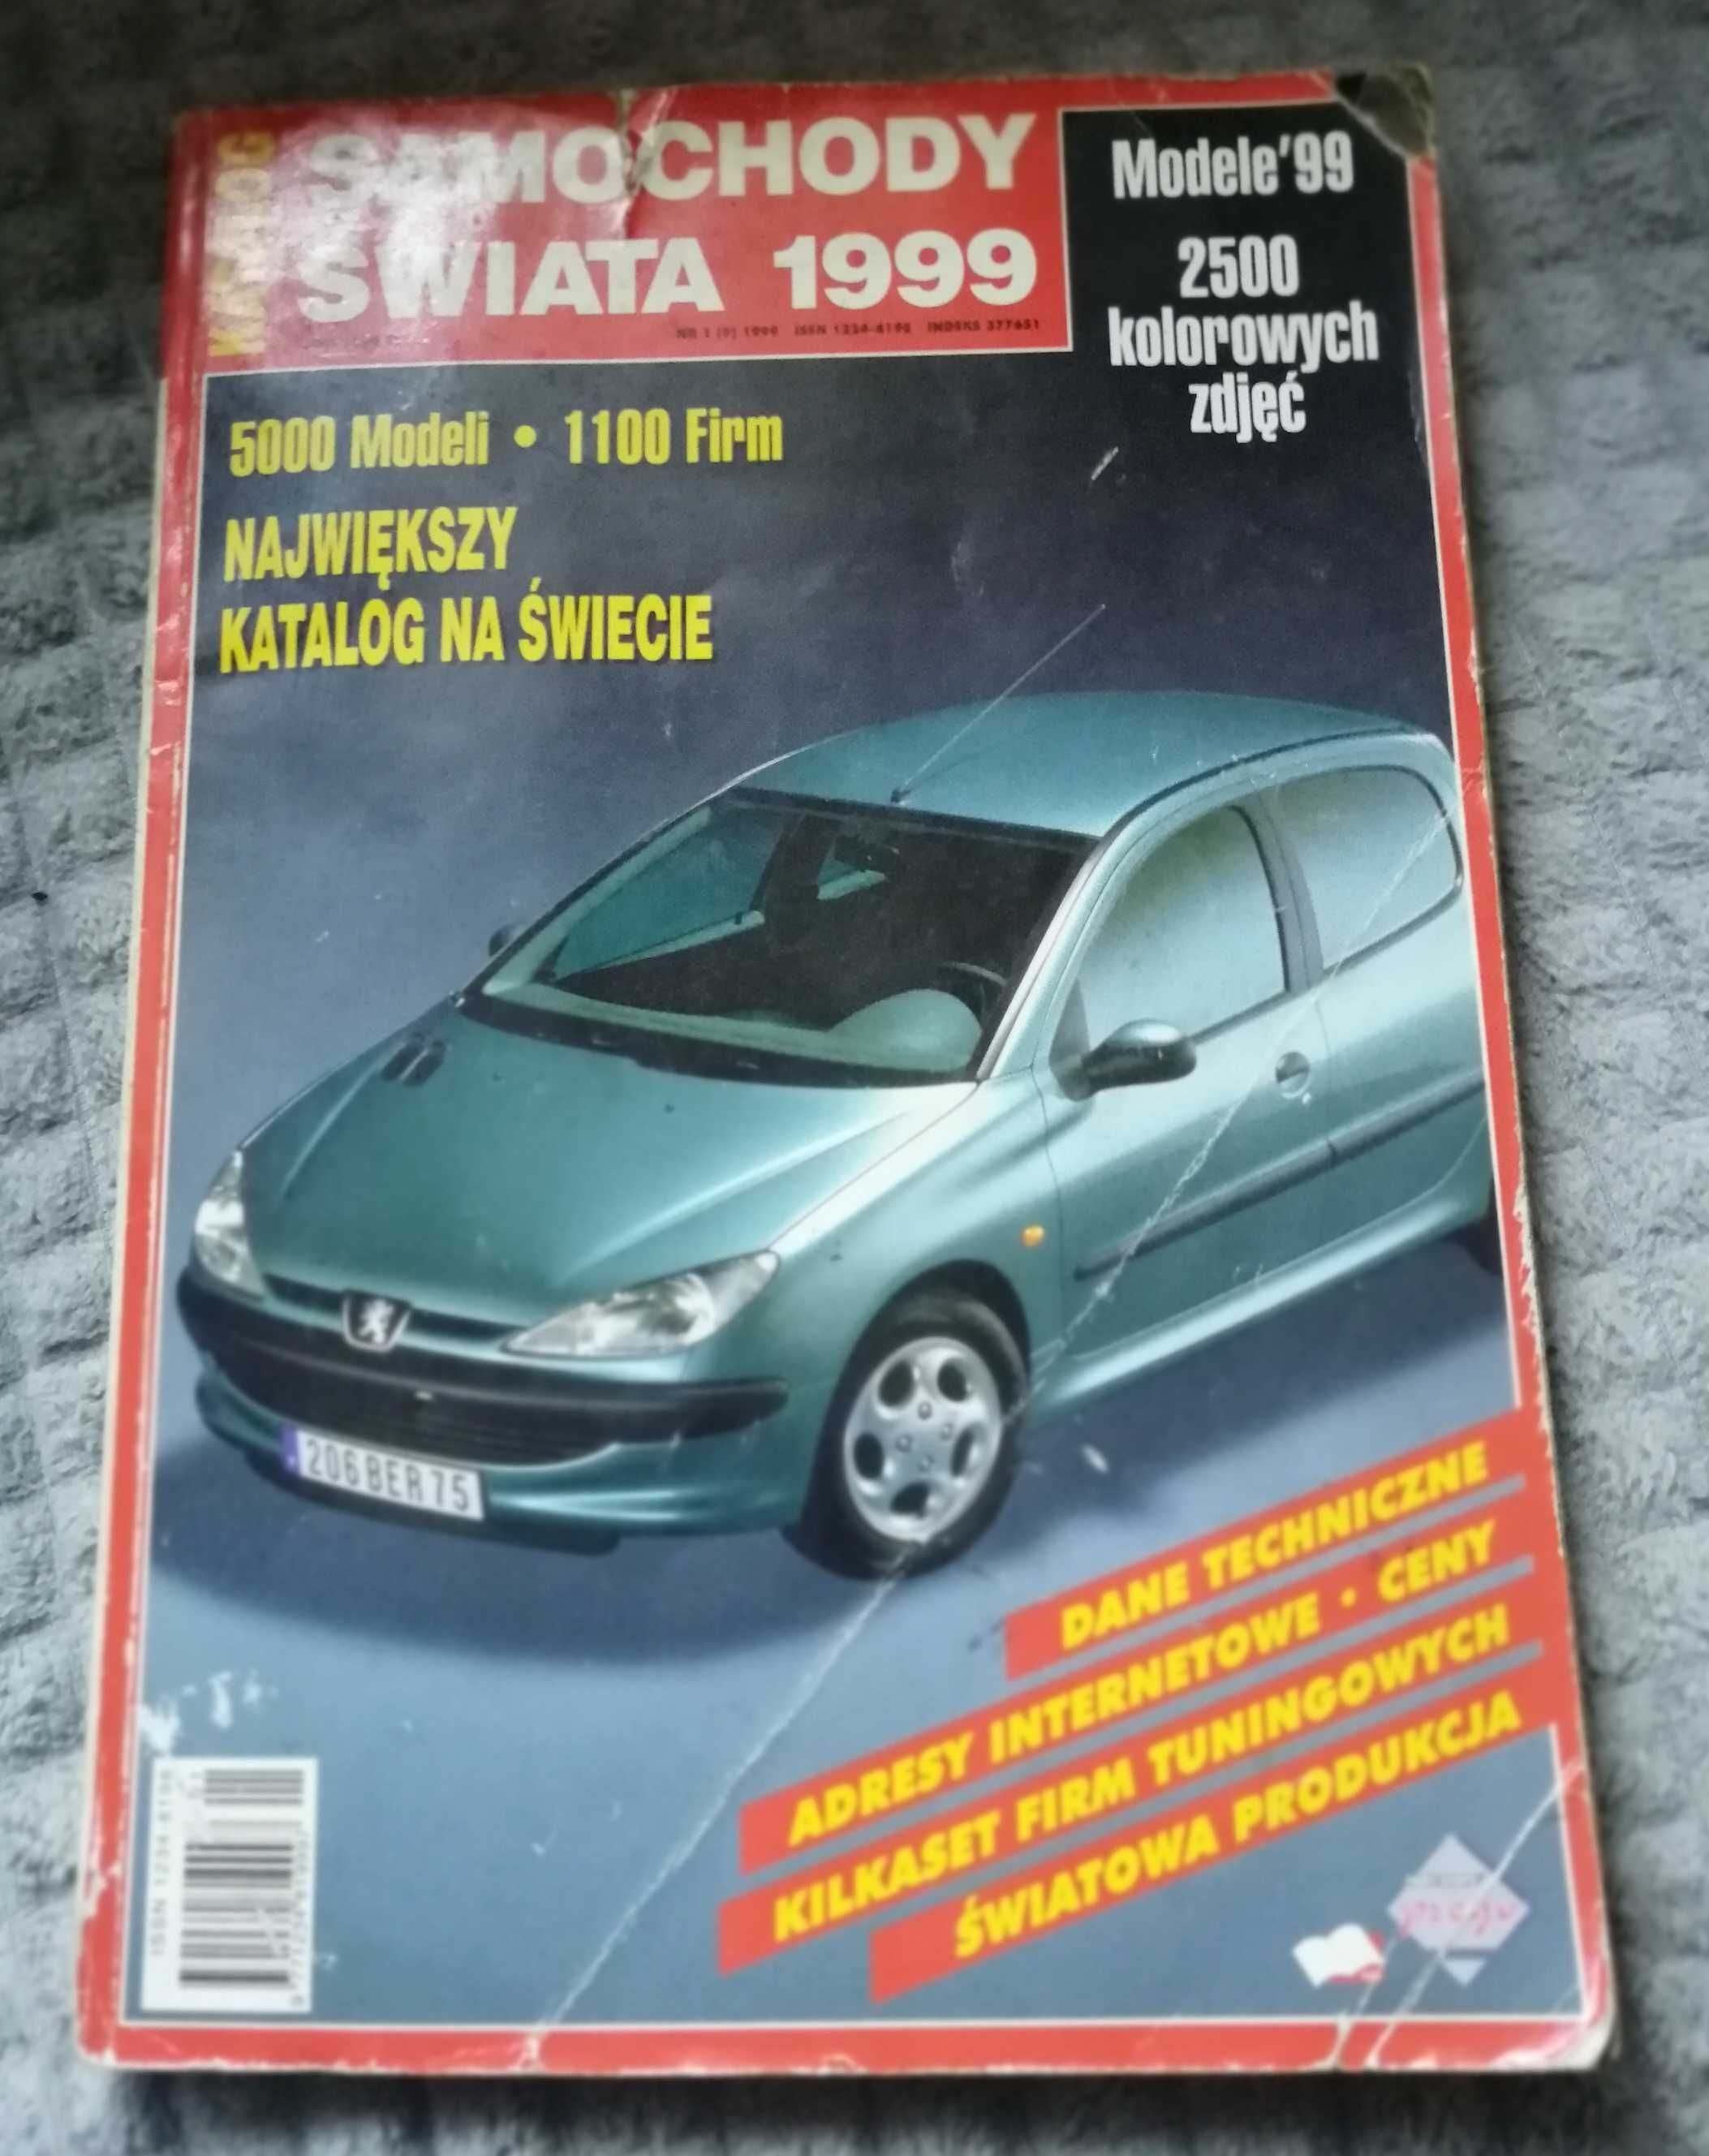 Samochody świata 1999 - katalog.